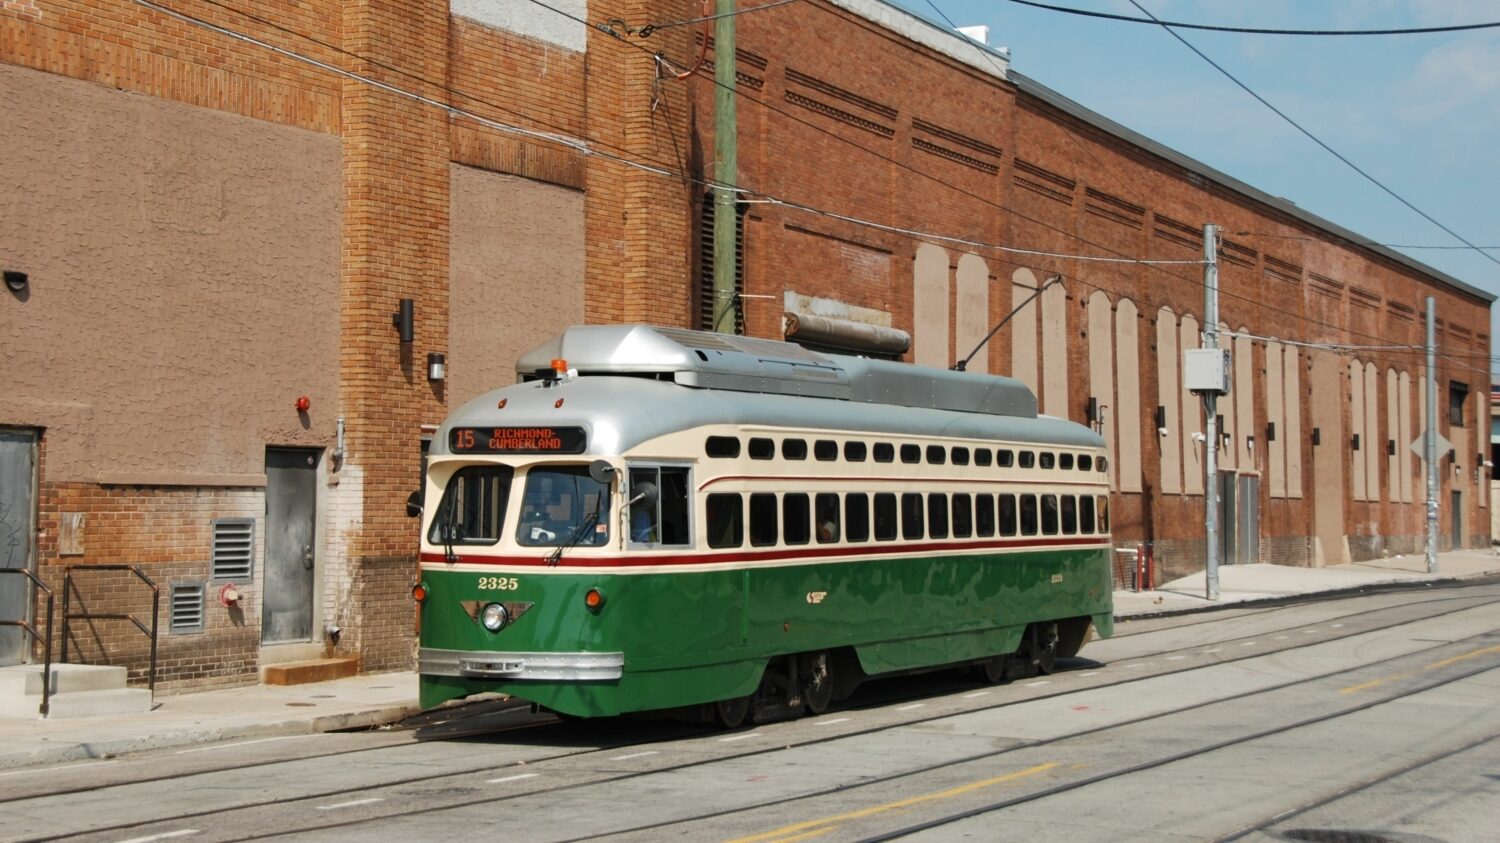 Tramvaj PCC II ev. č. 2325 zachycená ve Philadelphii v roce 2016. (foto: Libor Hinčica)